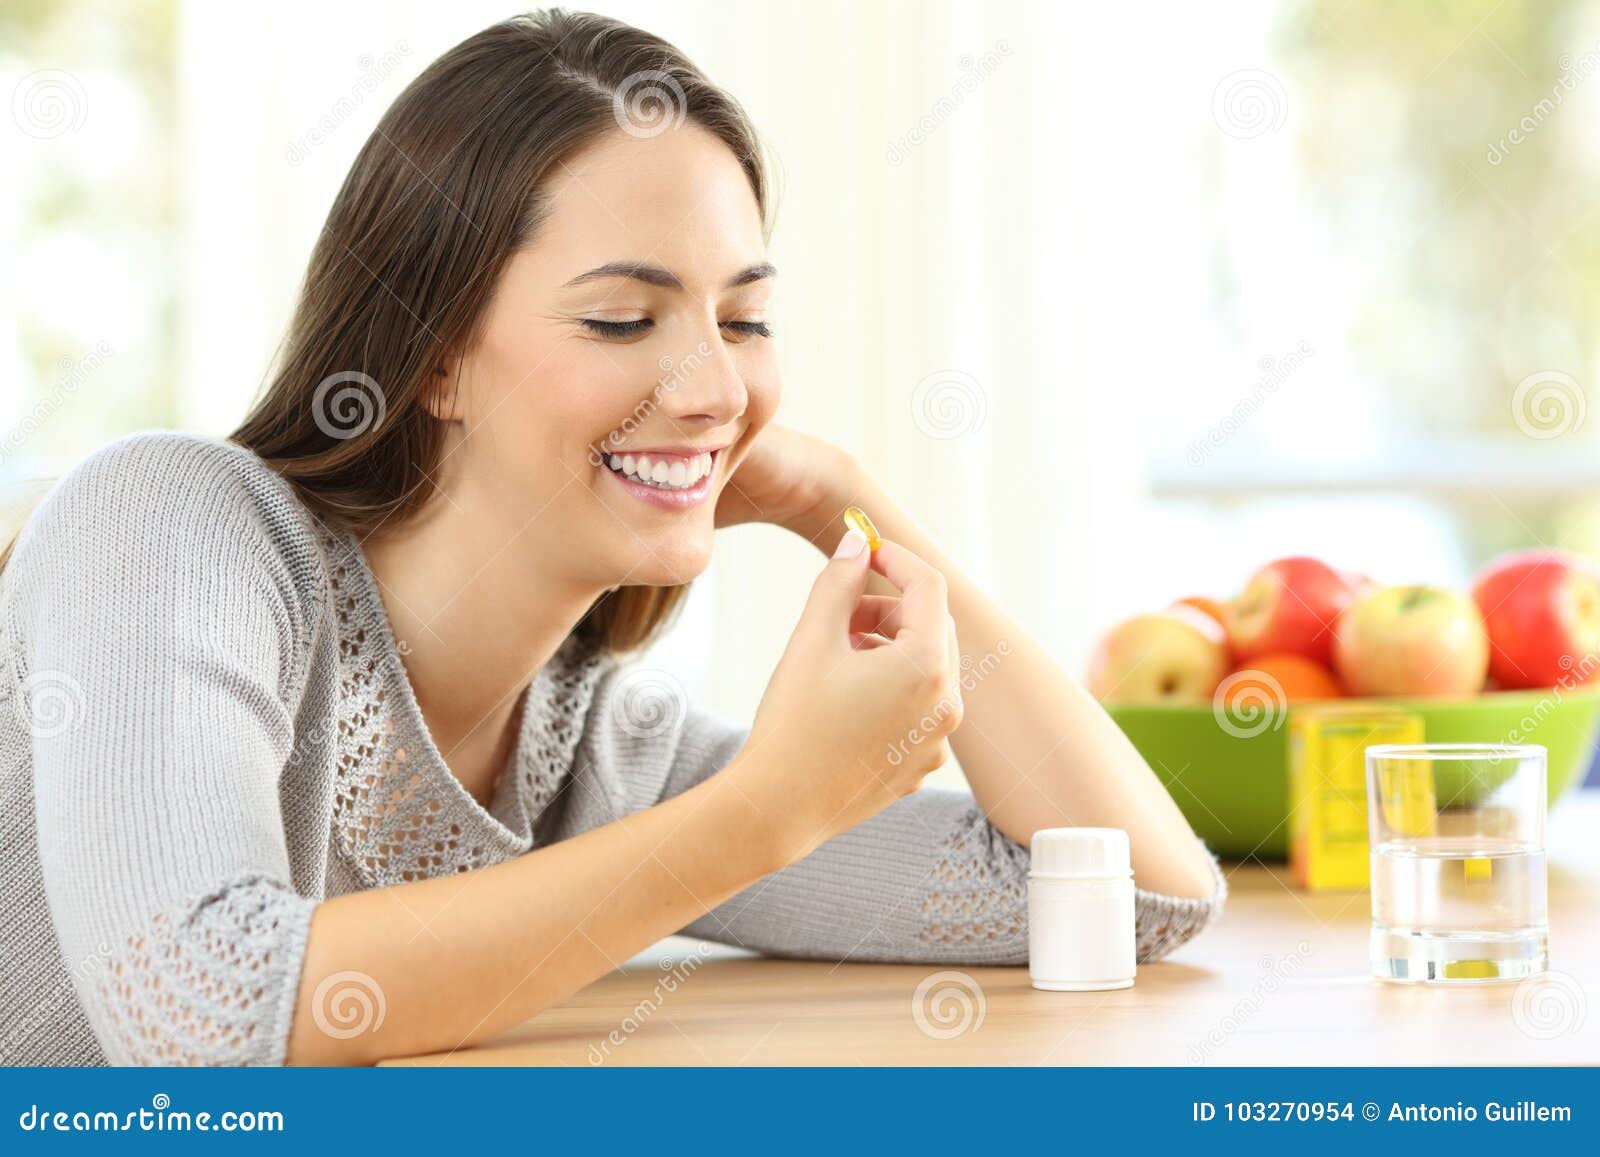 woman taking omega 3 vitamin pills